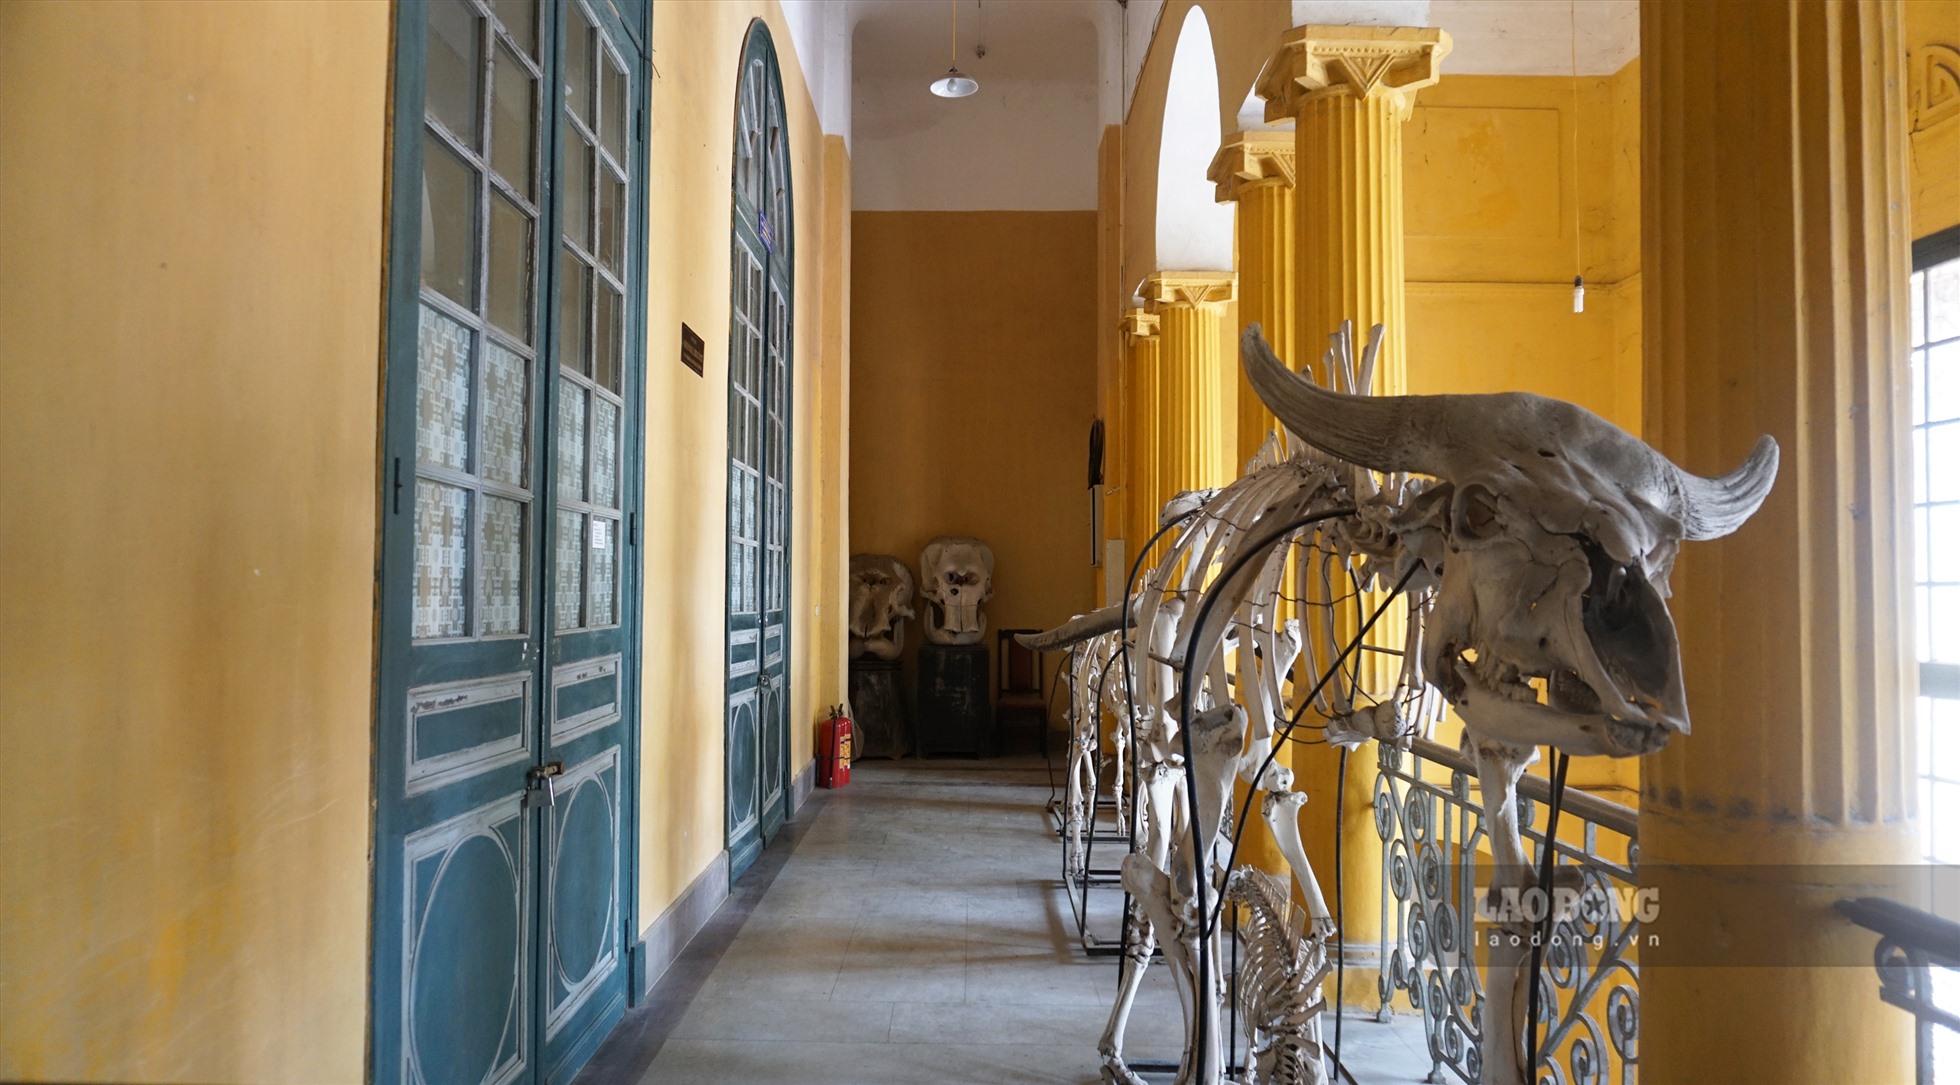 bảo tàng Sinh học độc đáo, là nơi lưu trữ và bảo tồn khoảng 65.000 mẫu động, thực vật từ cuối thế kỷ XIX cho đến nay. Ban quản lý trưng bày bộ sưu tập xương voi, trâu, bò… từ phía ngoài cửa, biến khu vực này thành địa điểm check-in thú vị.